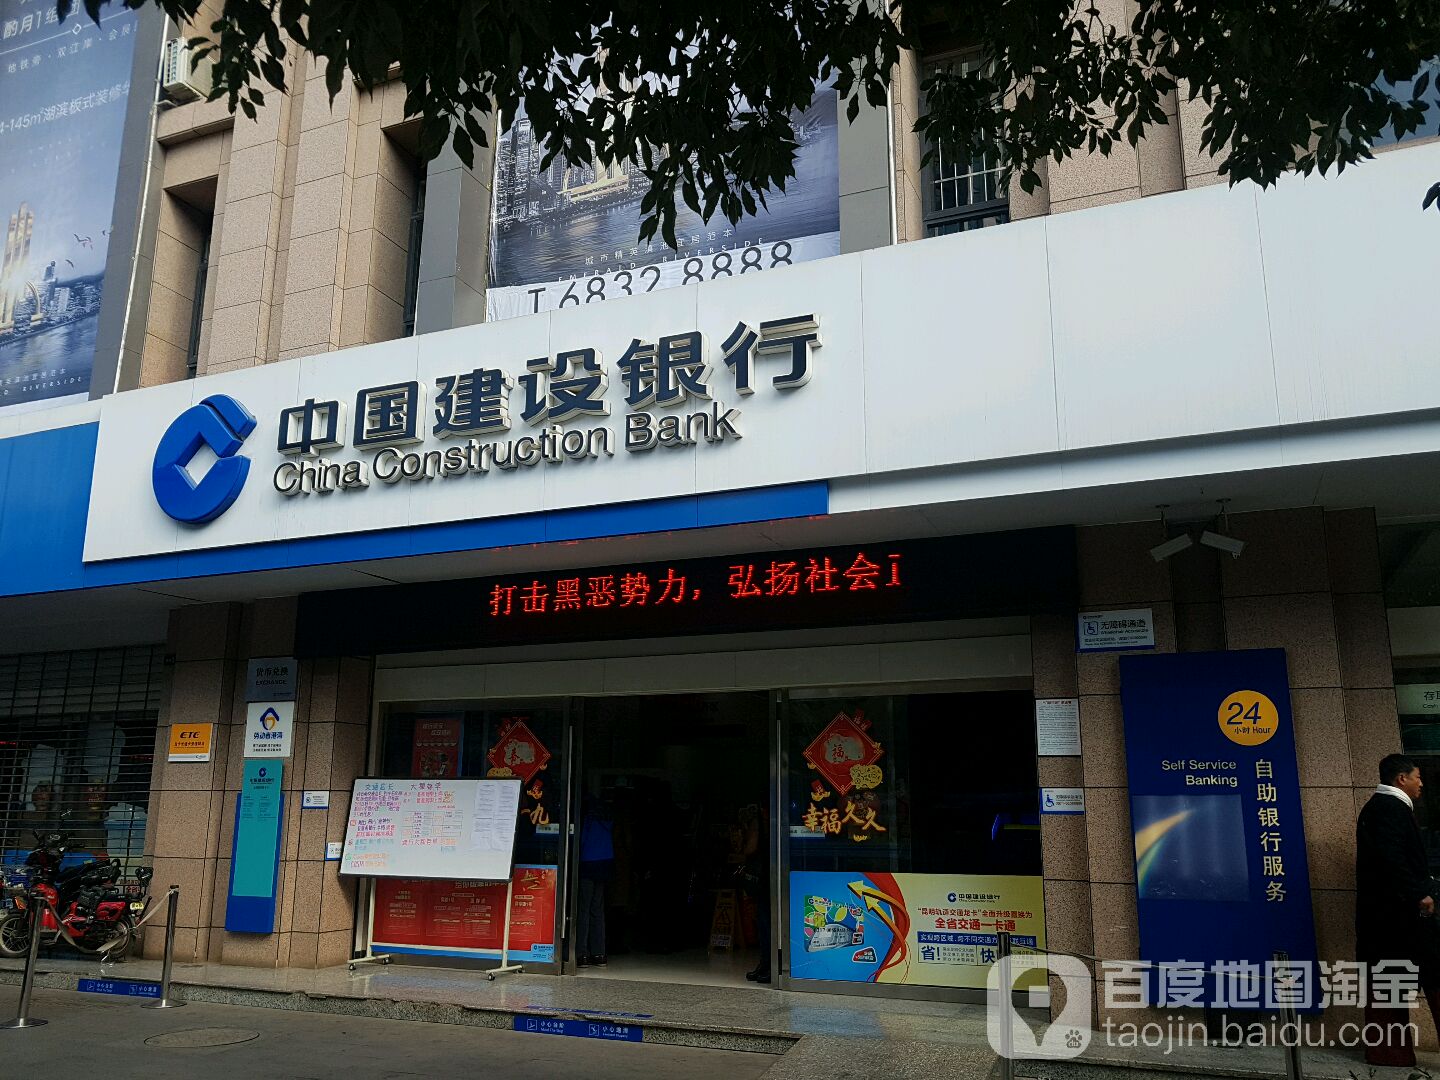 中国建设银行24小时自助银行(建设路支行)